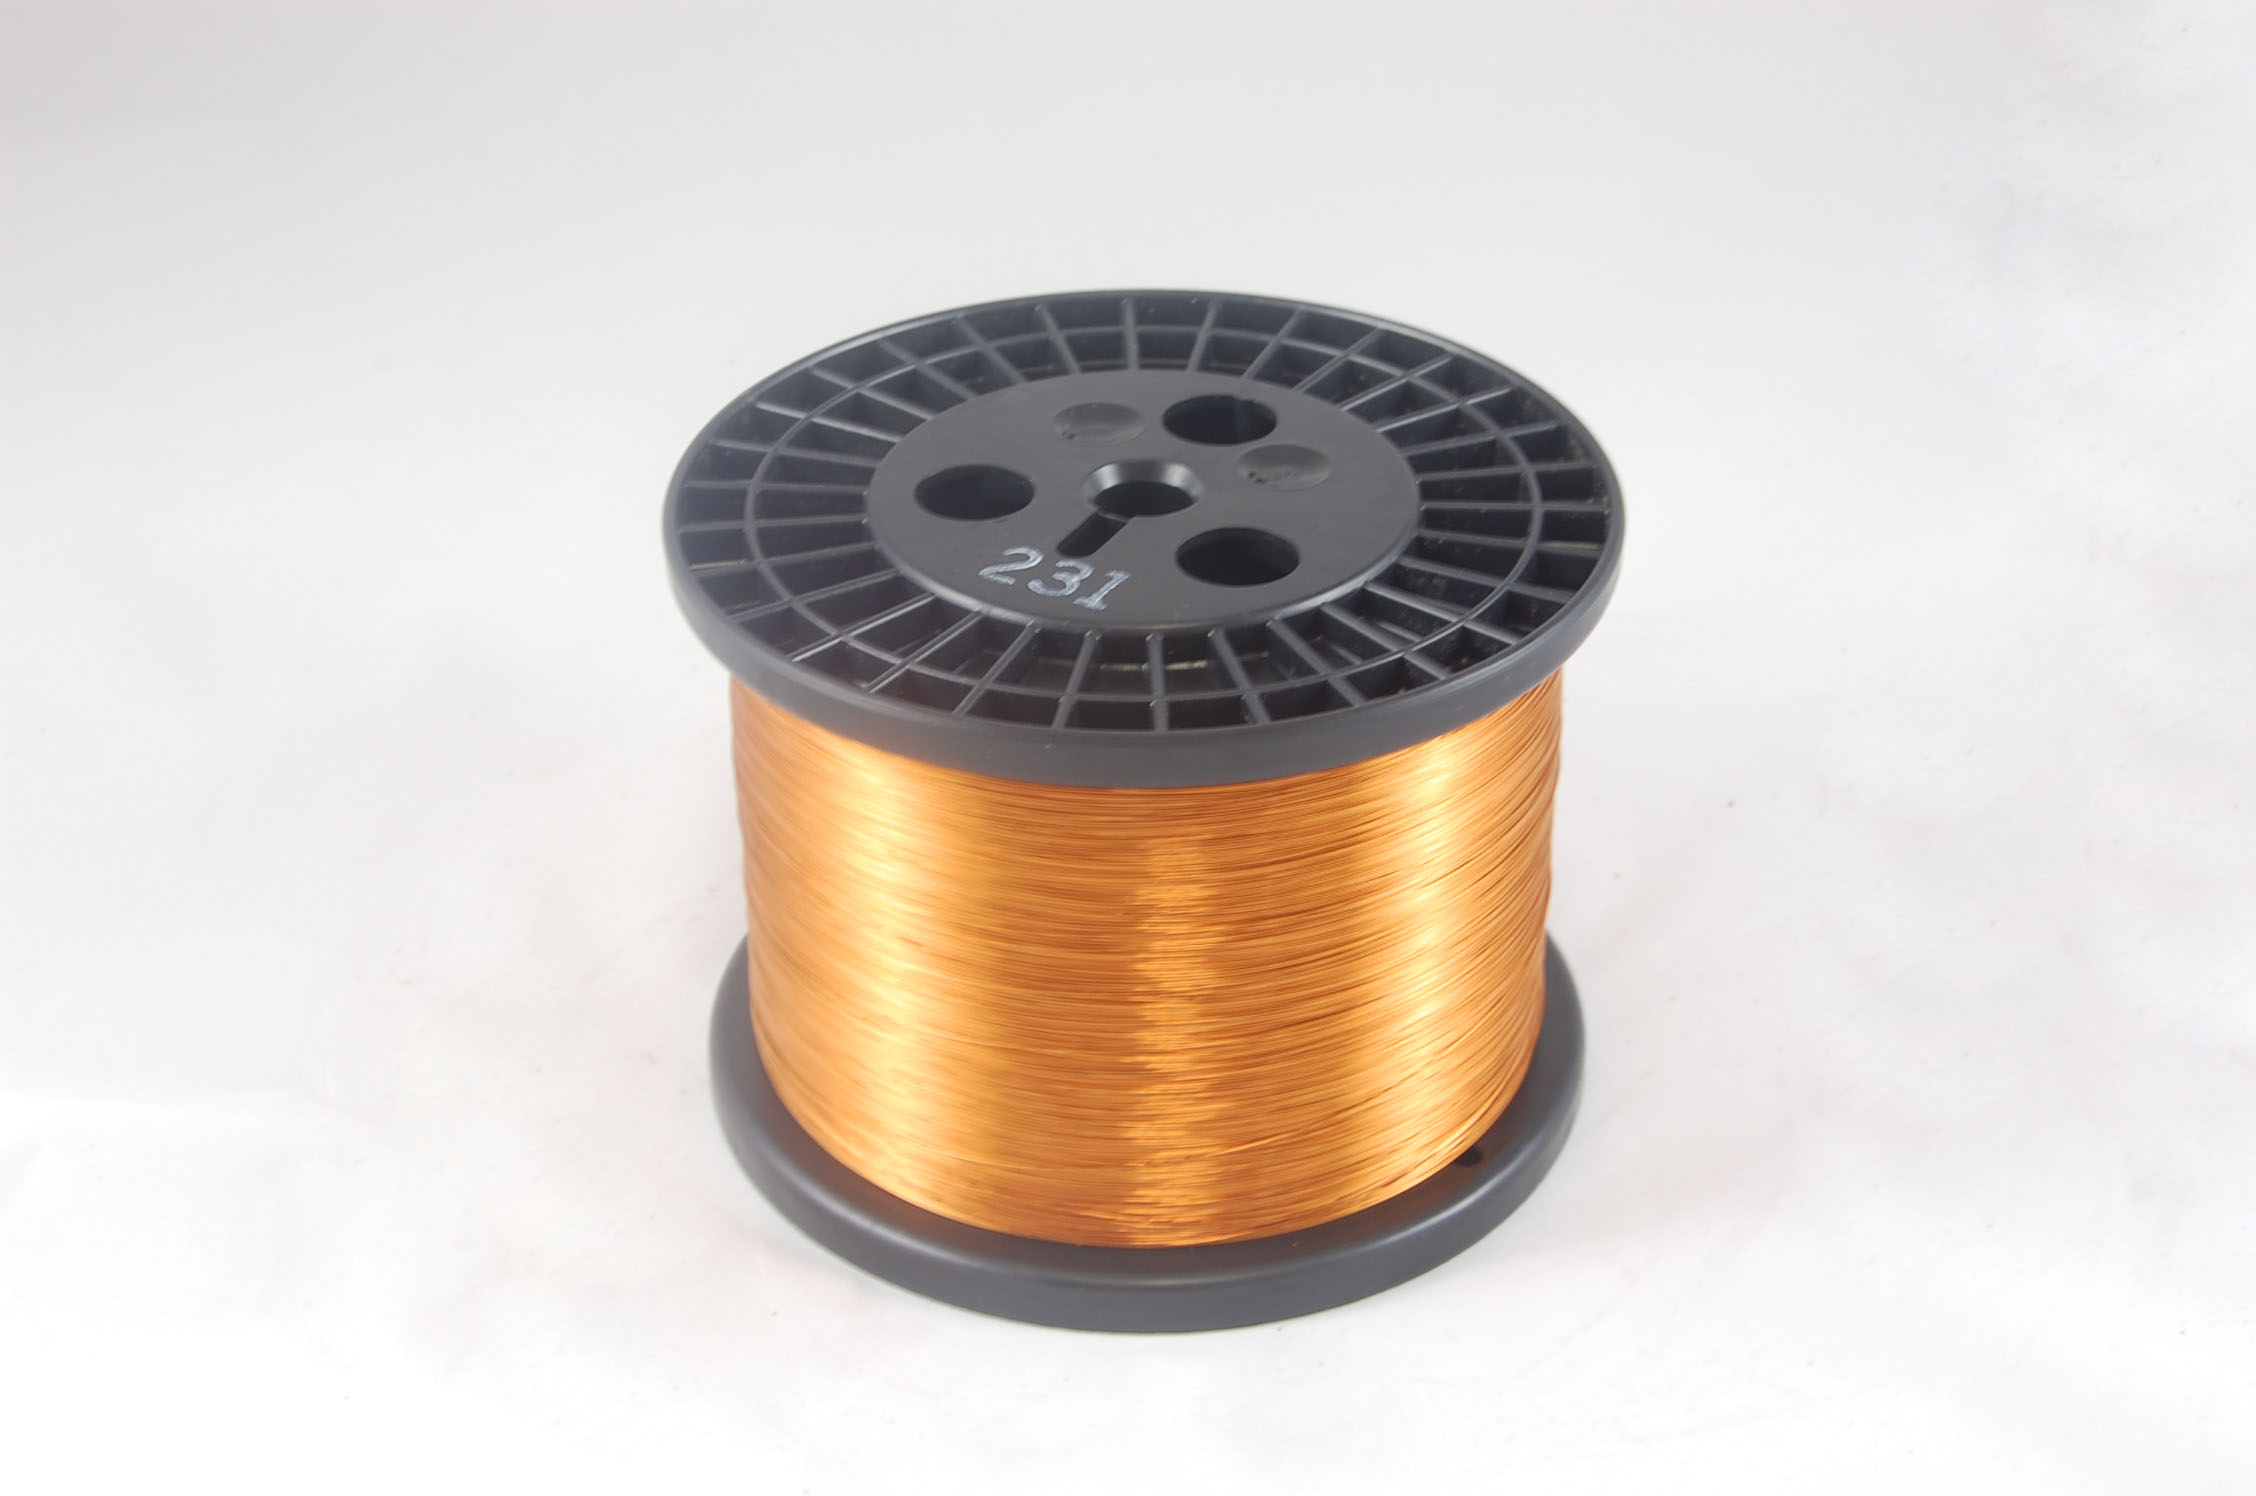 #32 Heavy GP/MR-200 Round MW 35 Copper Magnet Wire 200°C, copper, 10 LB 6" spool (average wght.)